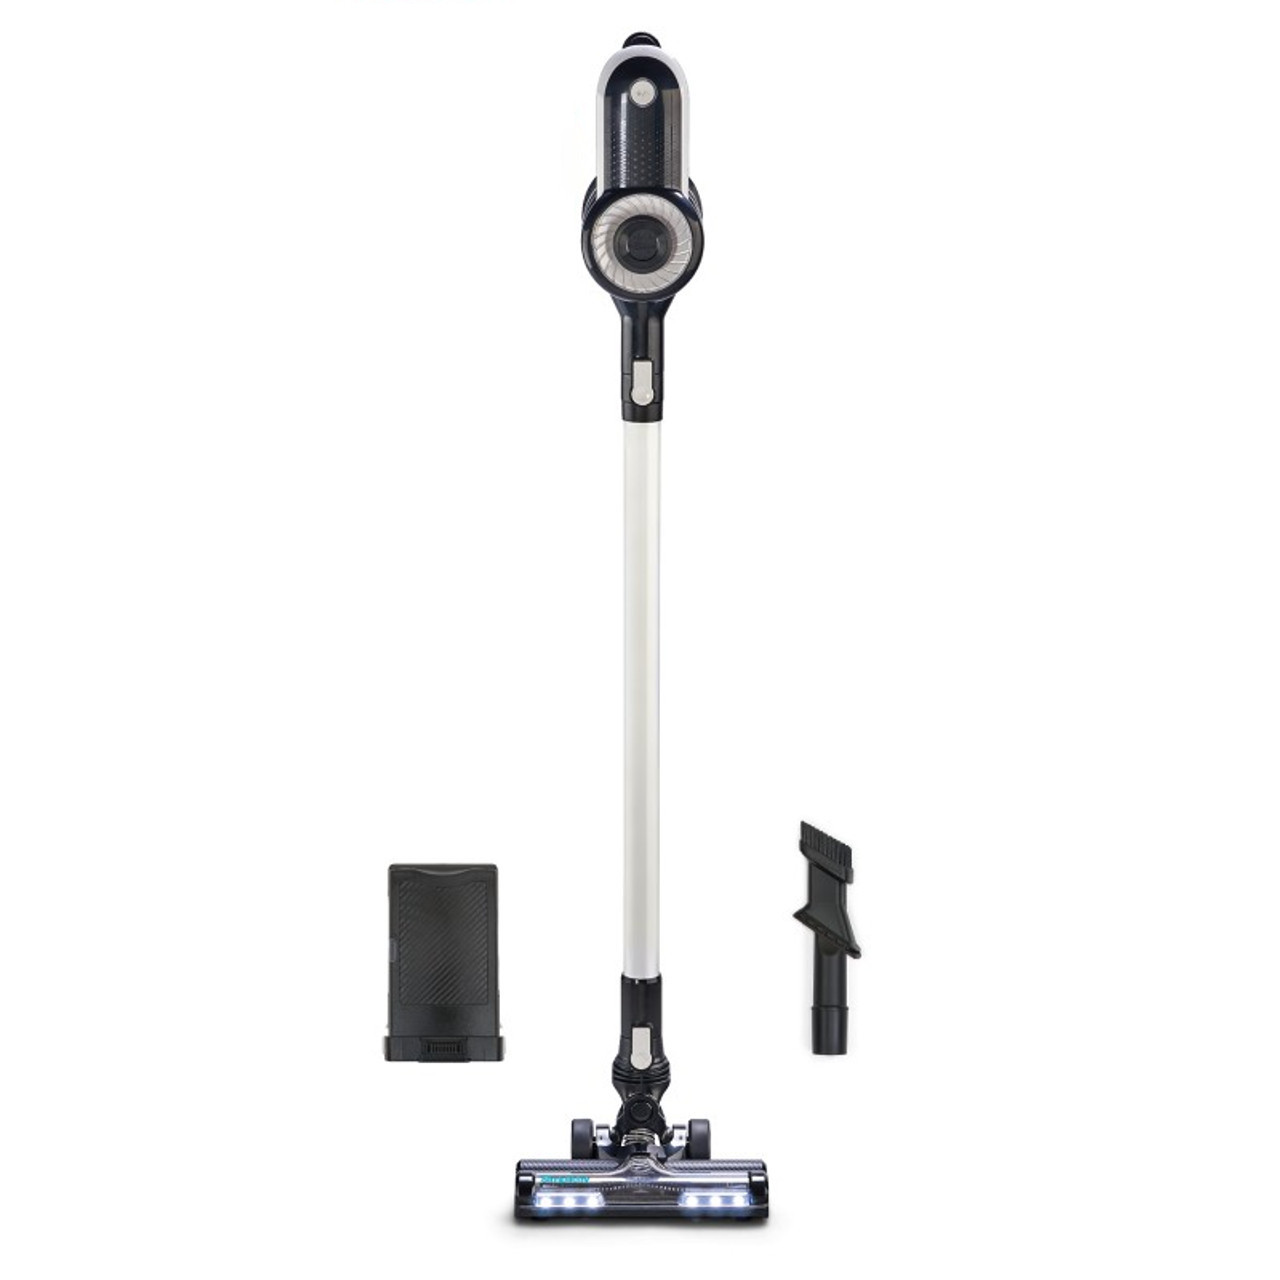 Simplicity S65 Premium Cordless Multi-Use Vacuum at Classic Vacuum